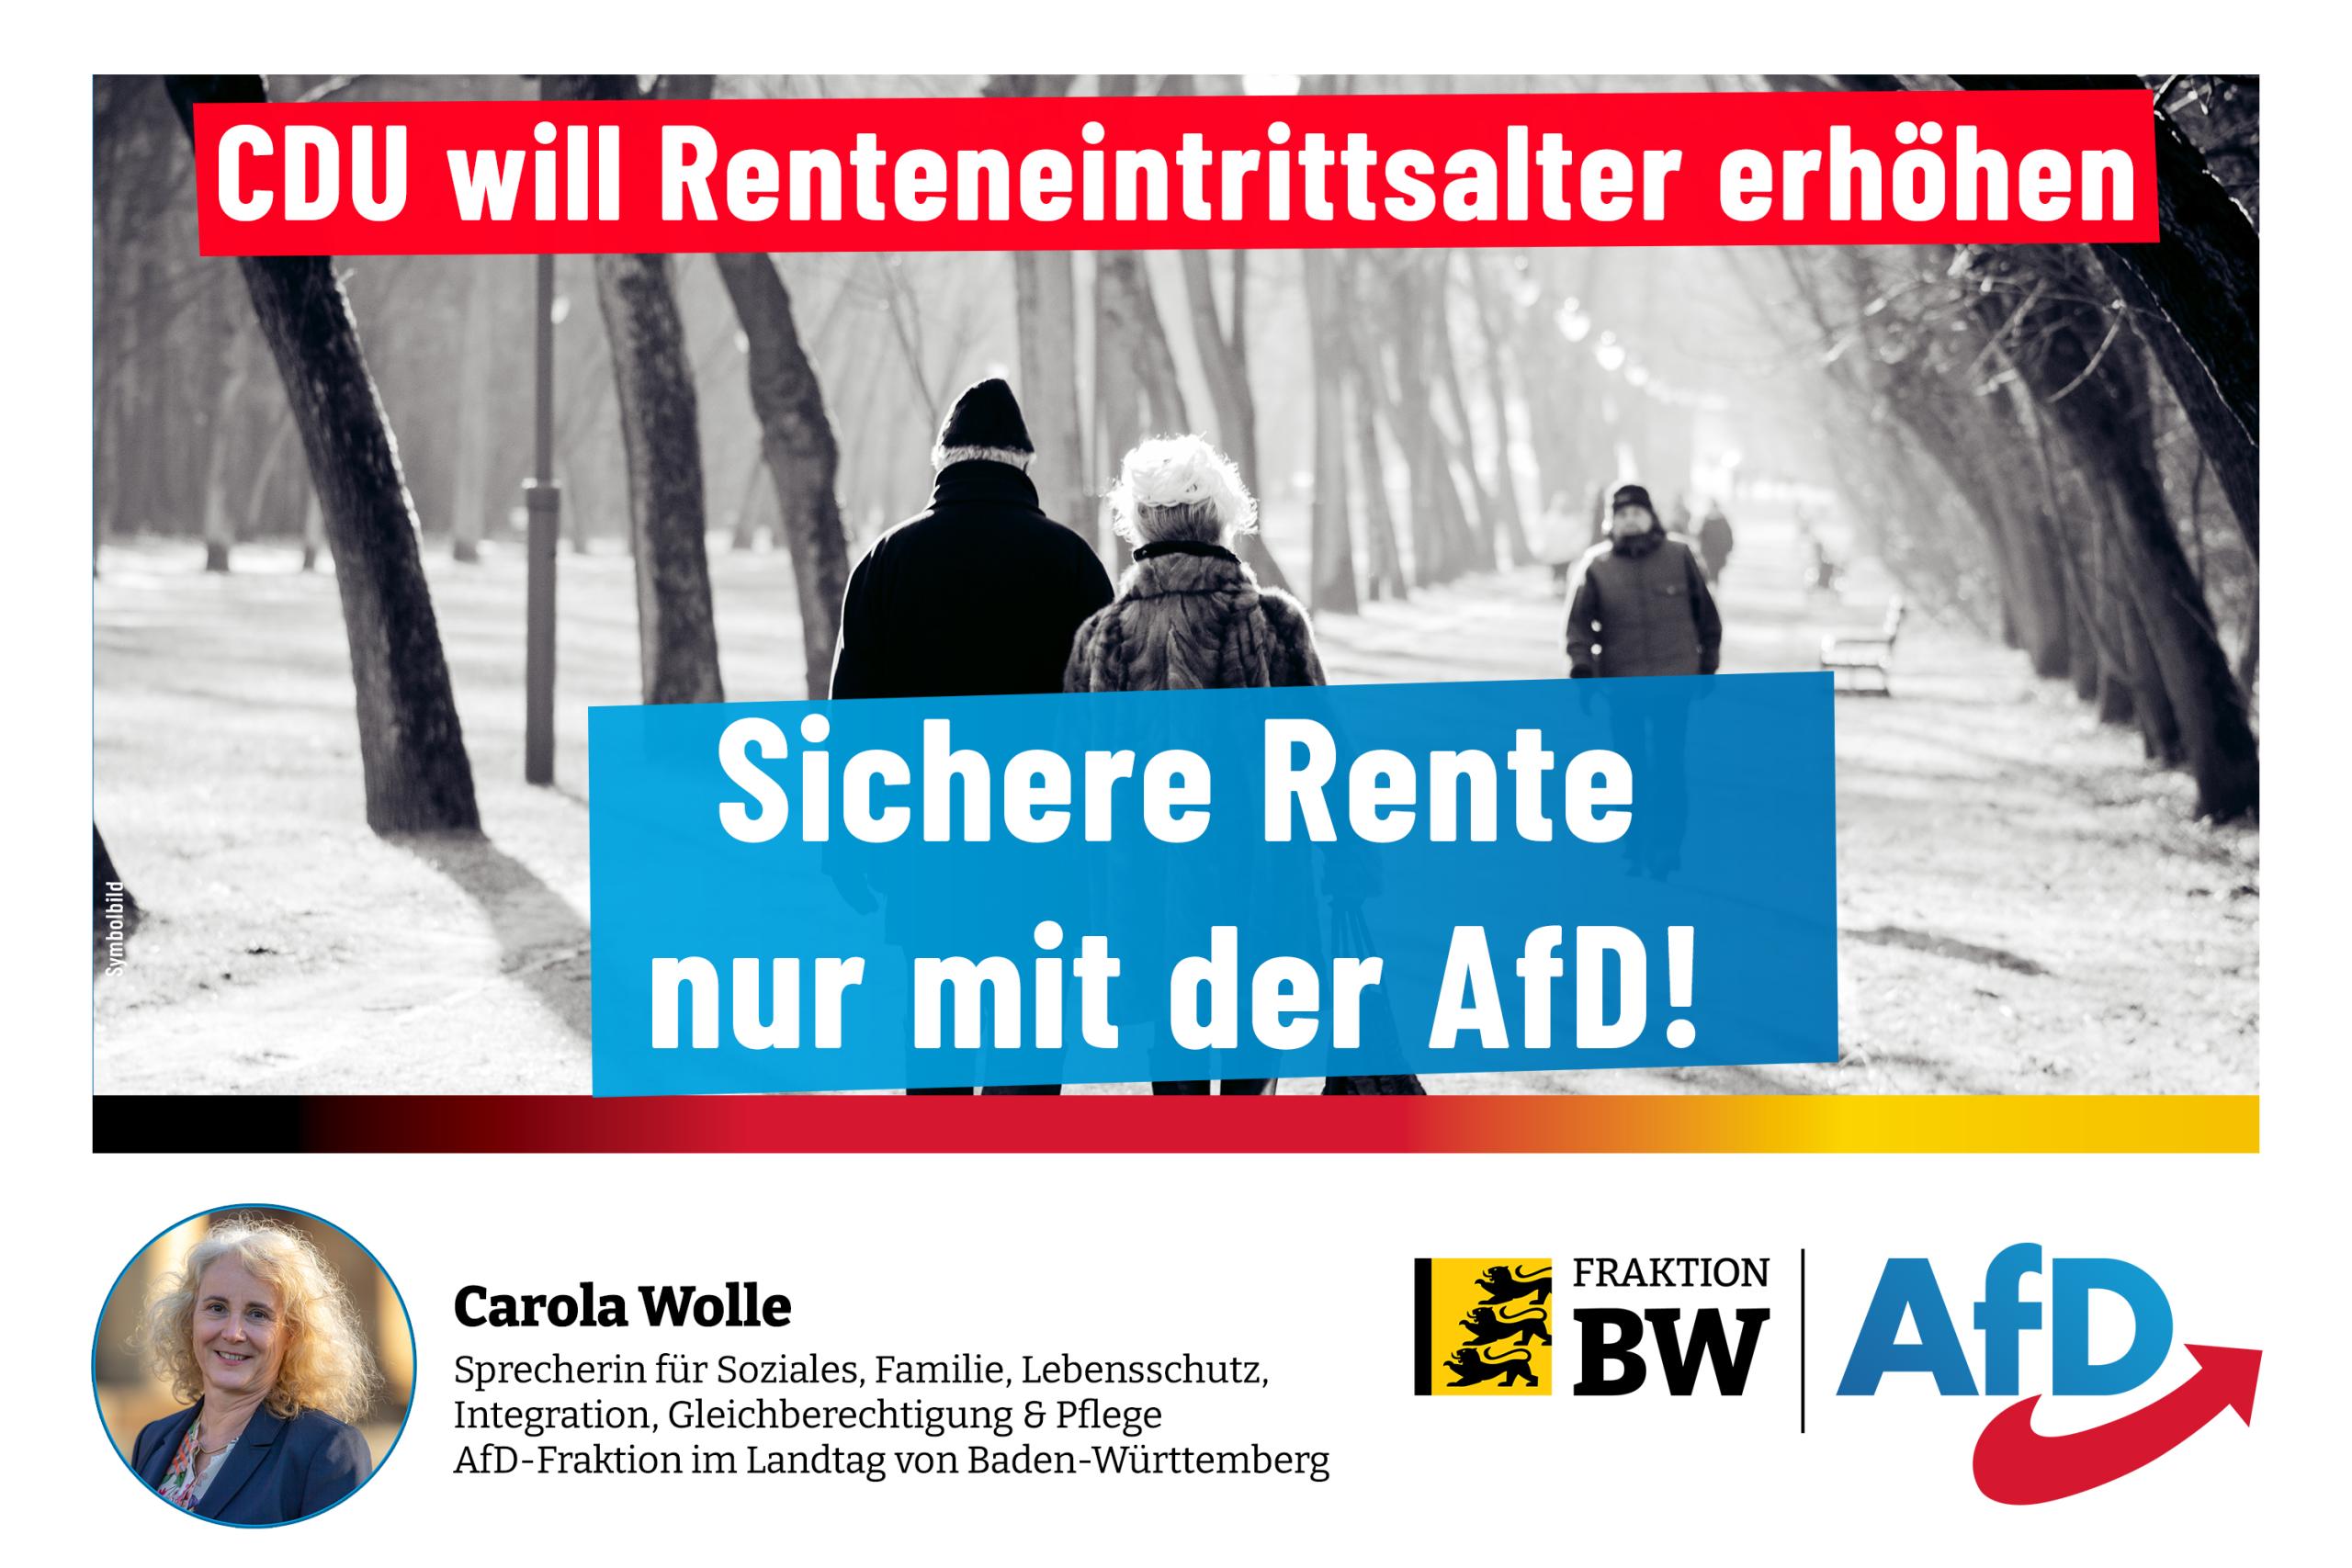 Carola Wolle: CDU will Renteneintrittsalter erhöhen - Sichere Rente nur mit der AfD!